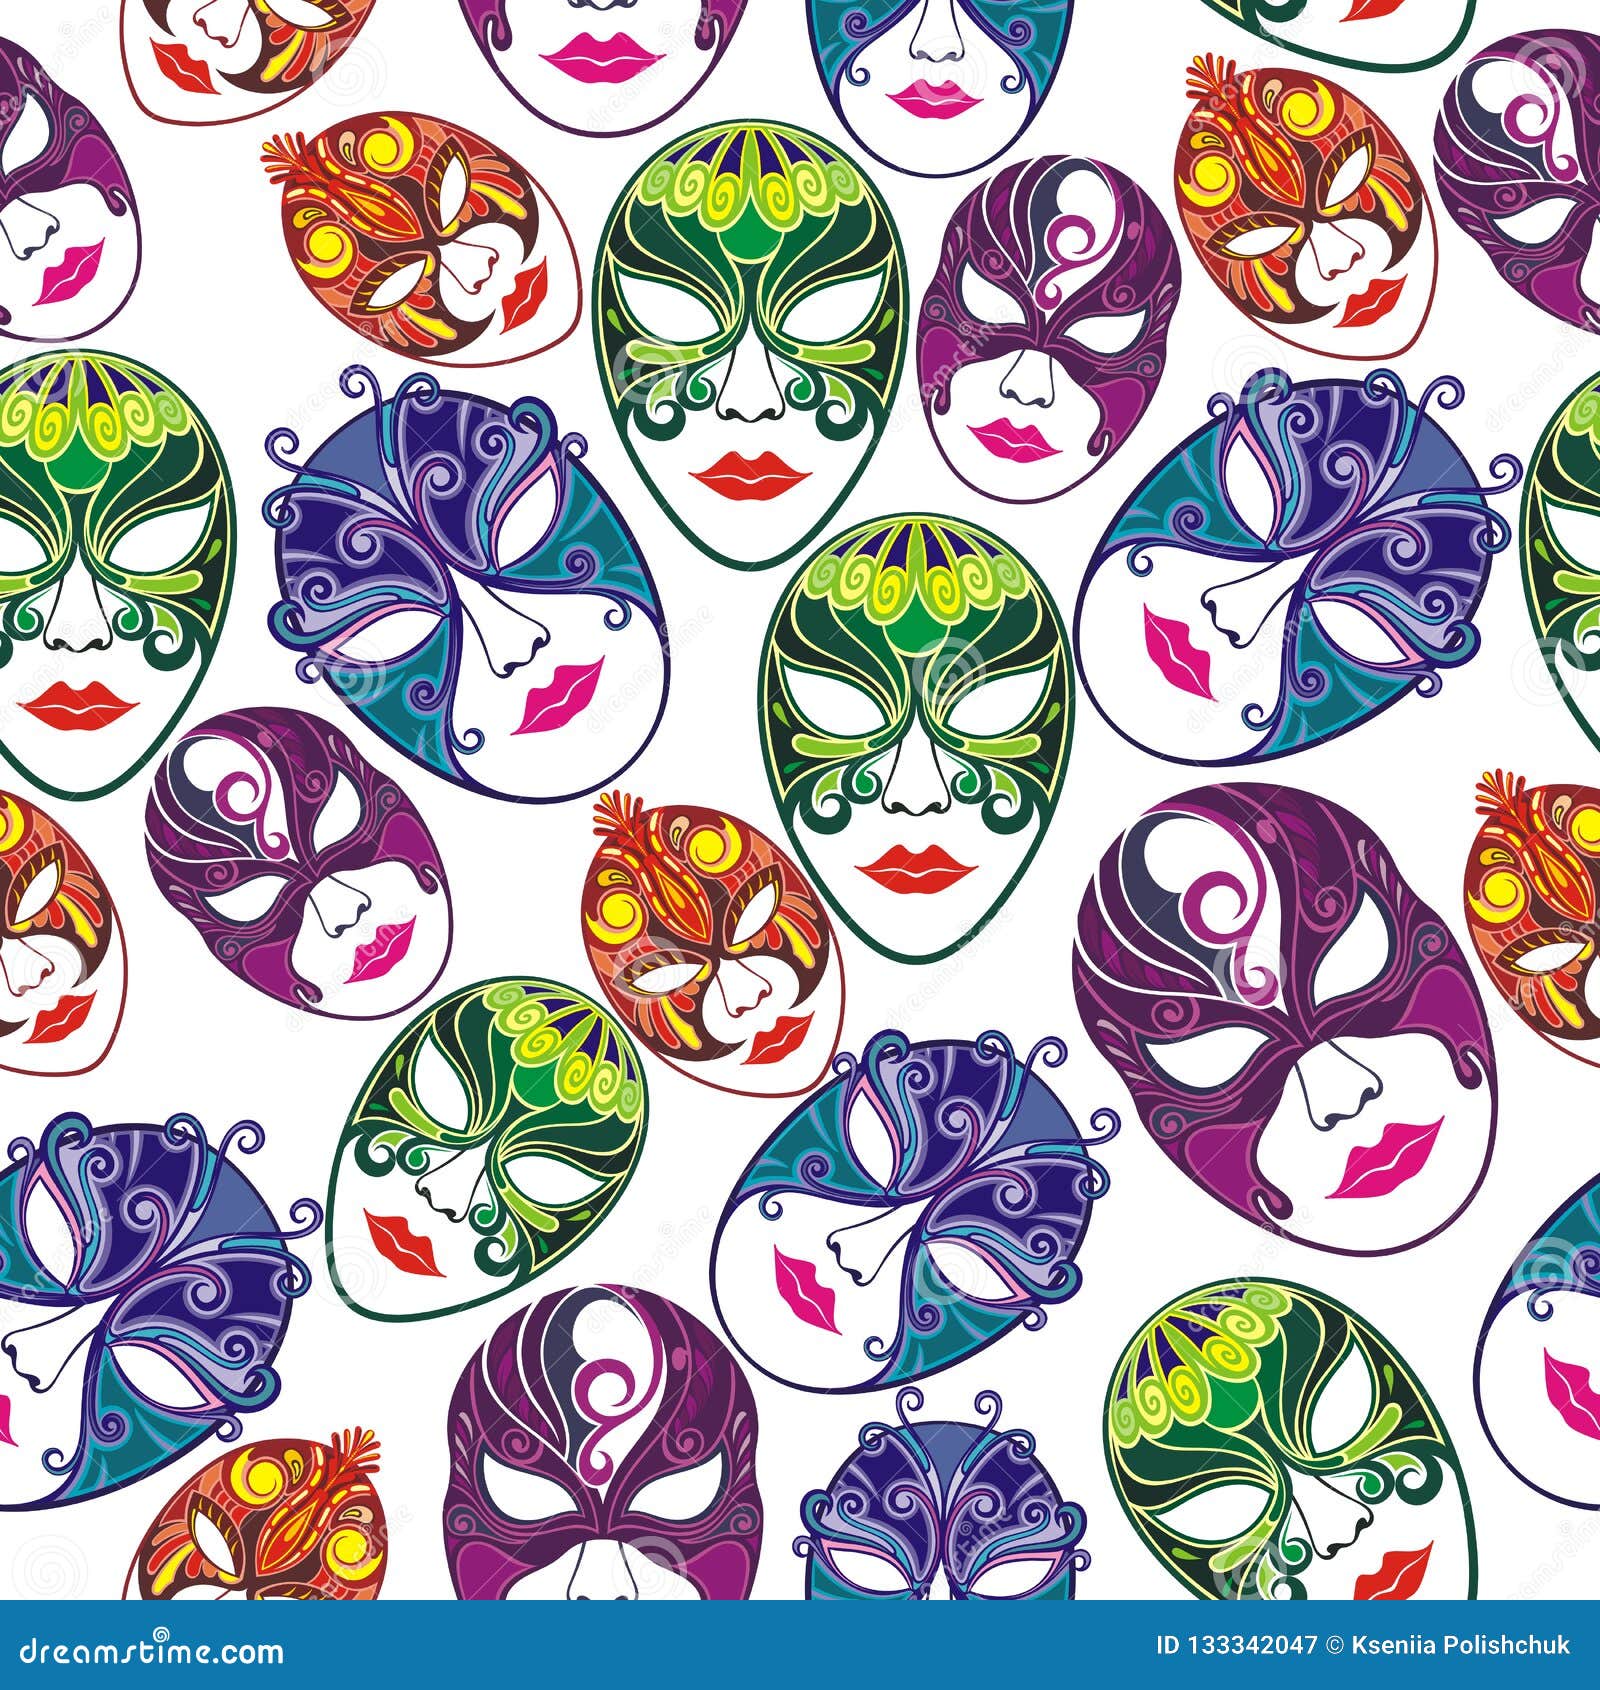 Masquerade Party Masks. Vector Illustration Stock Vector - Illustration ...